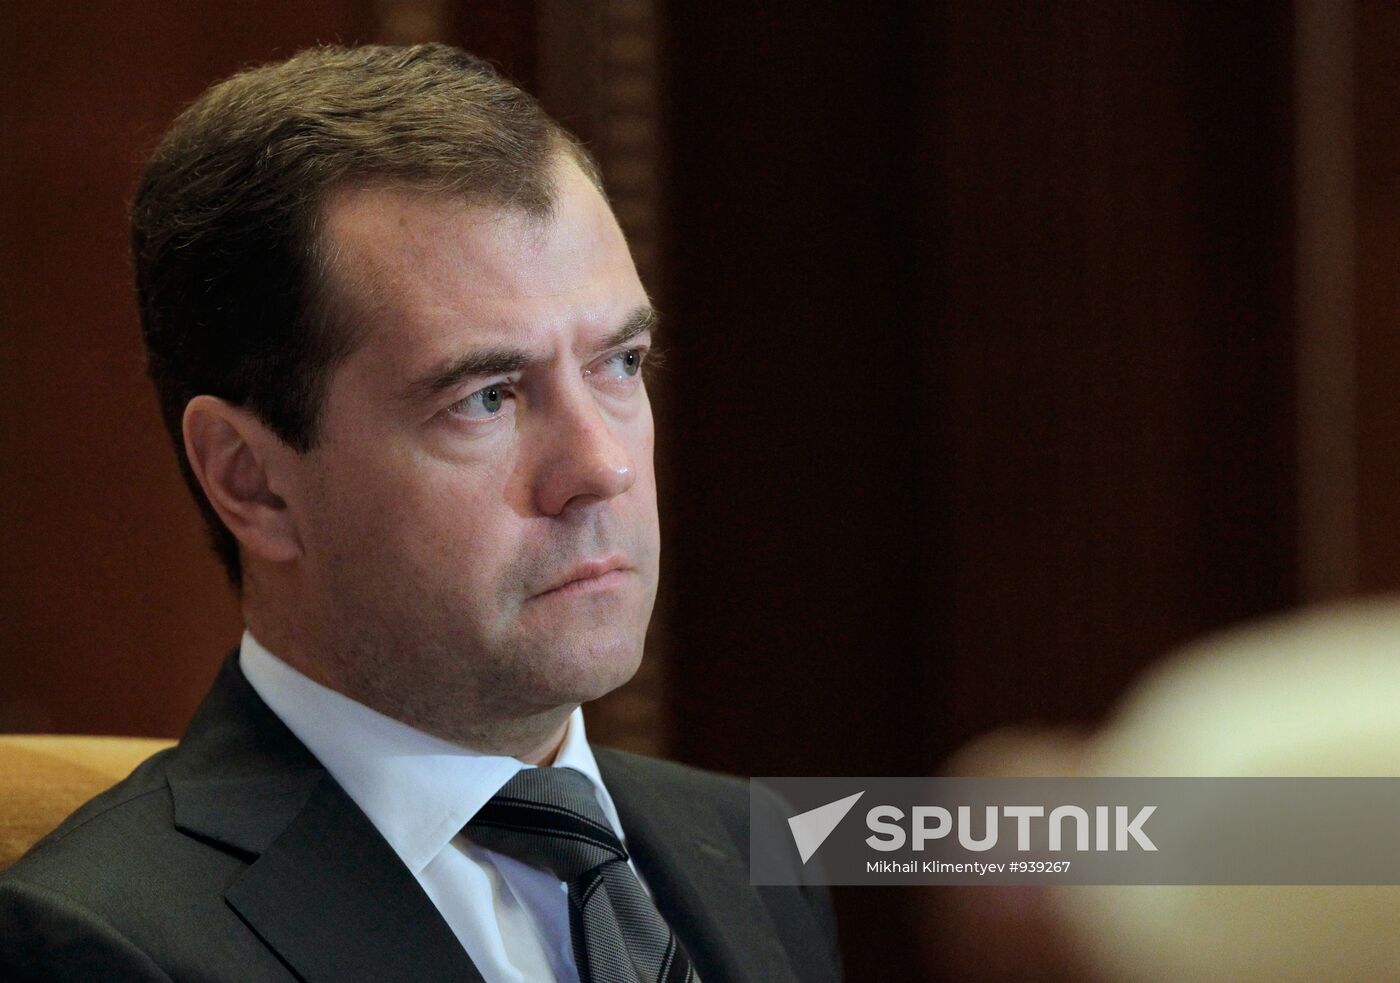 Dmitry Medvedev holds meeting, Gorki residence